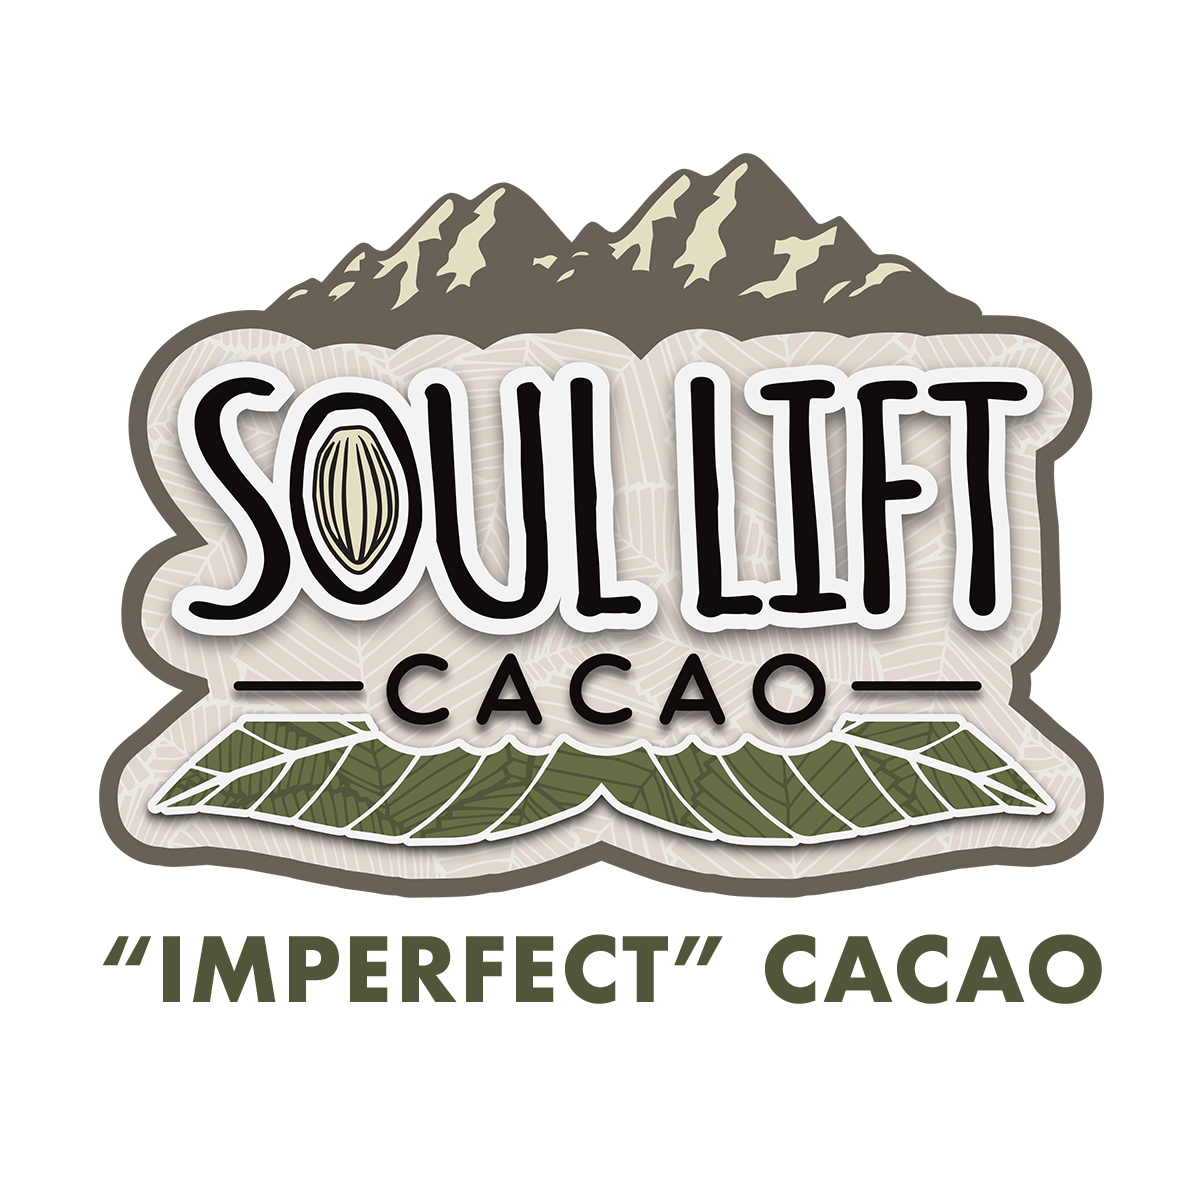 Cacao "imparfait"